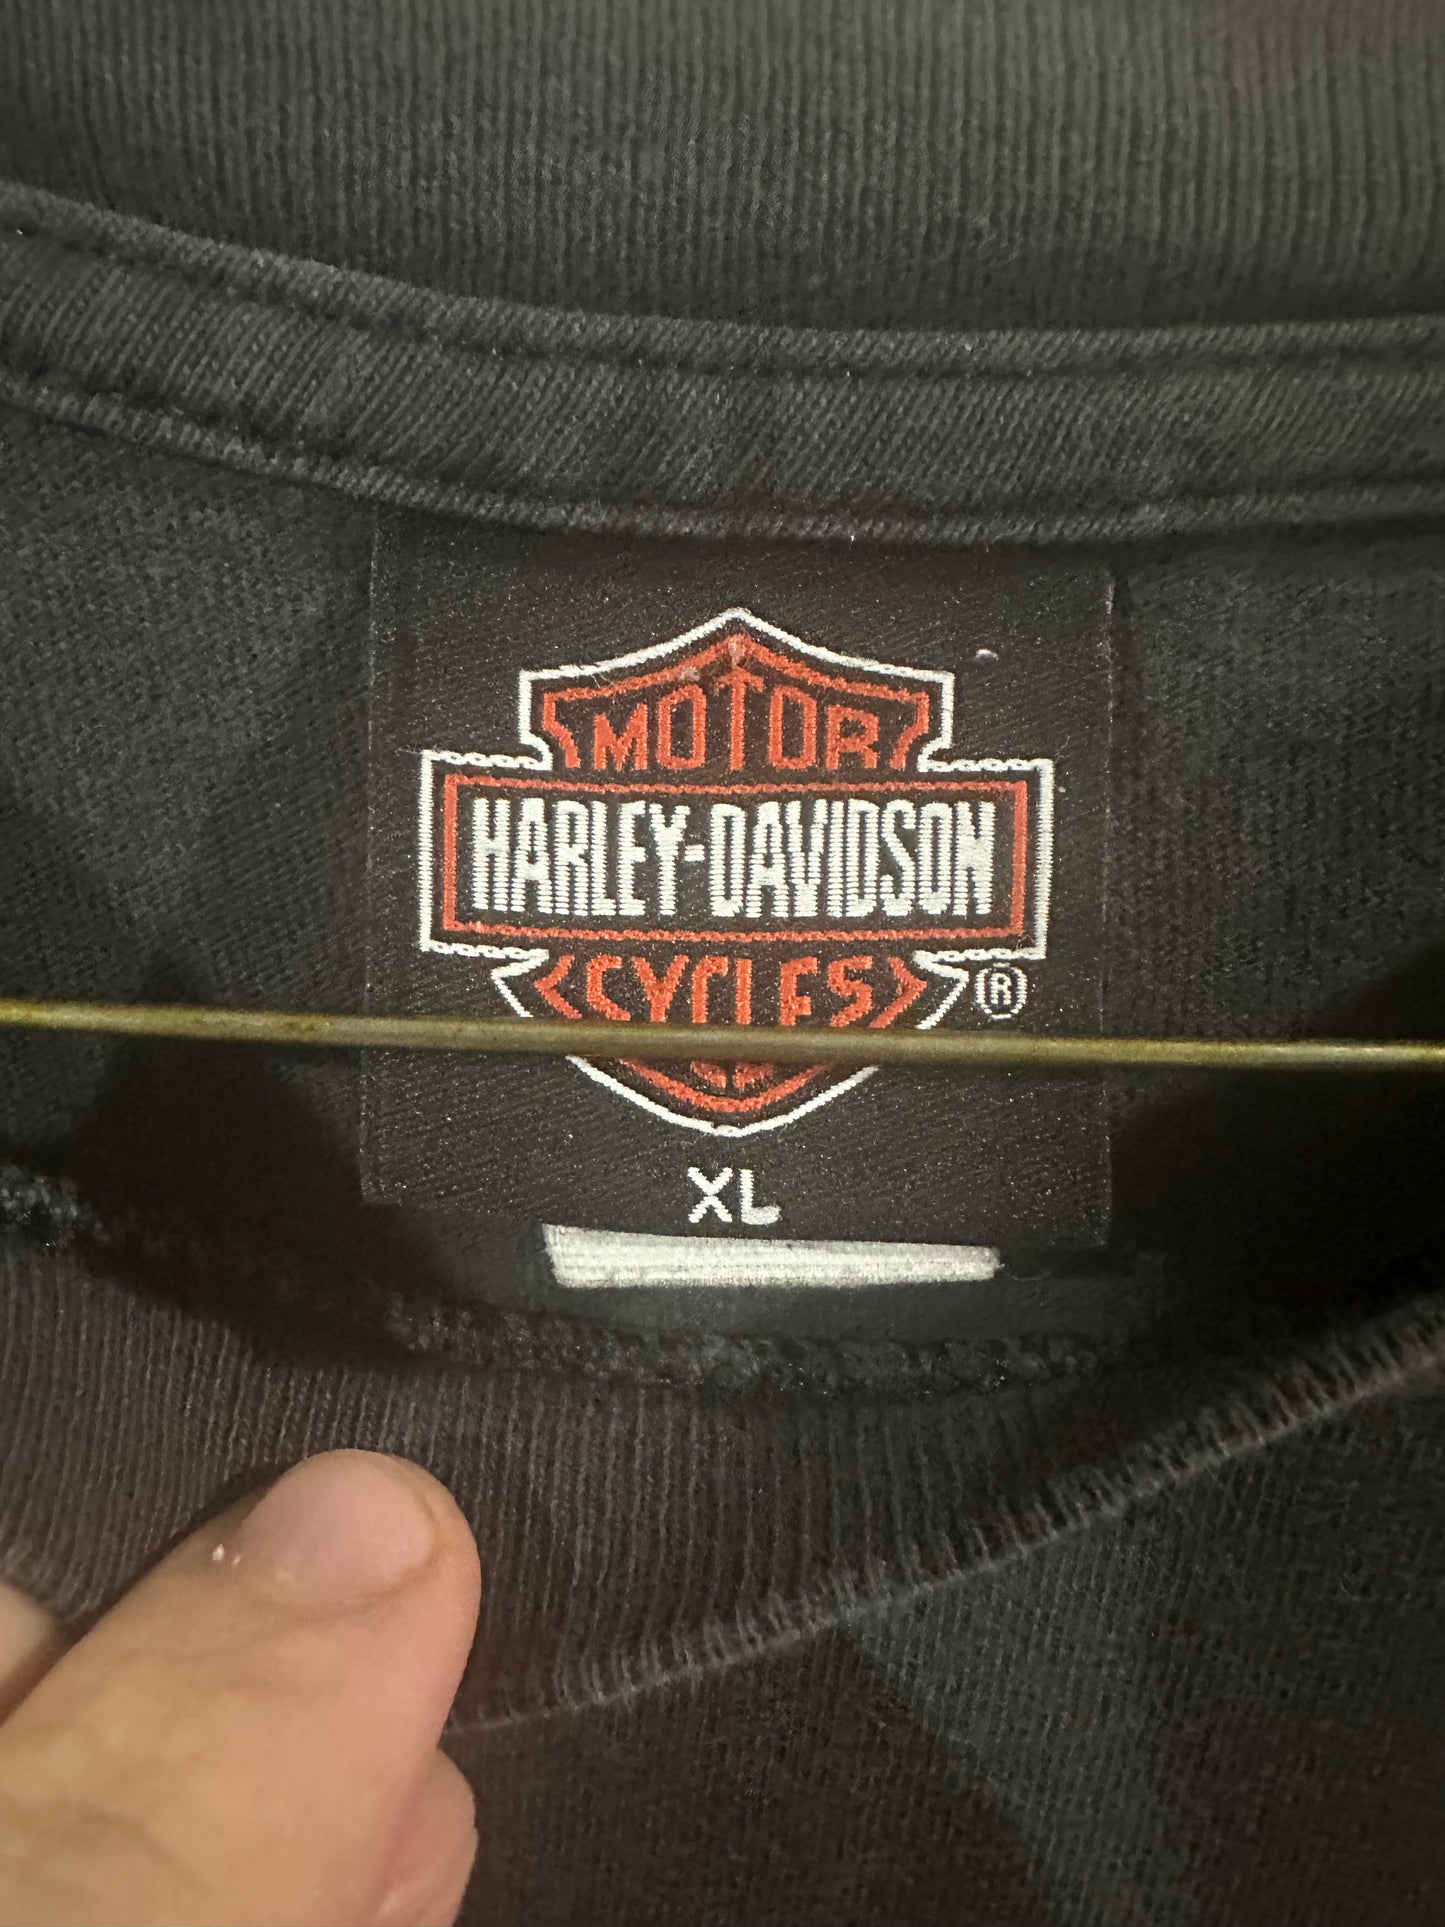 Denver Harley Davidson tee